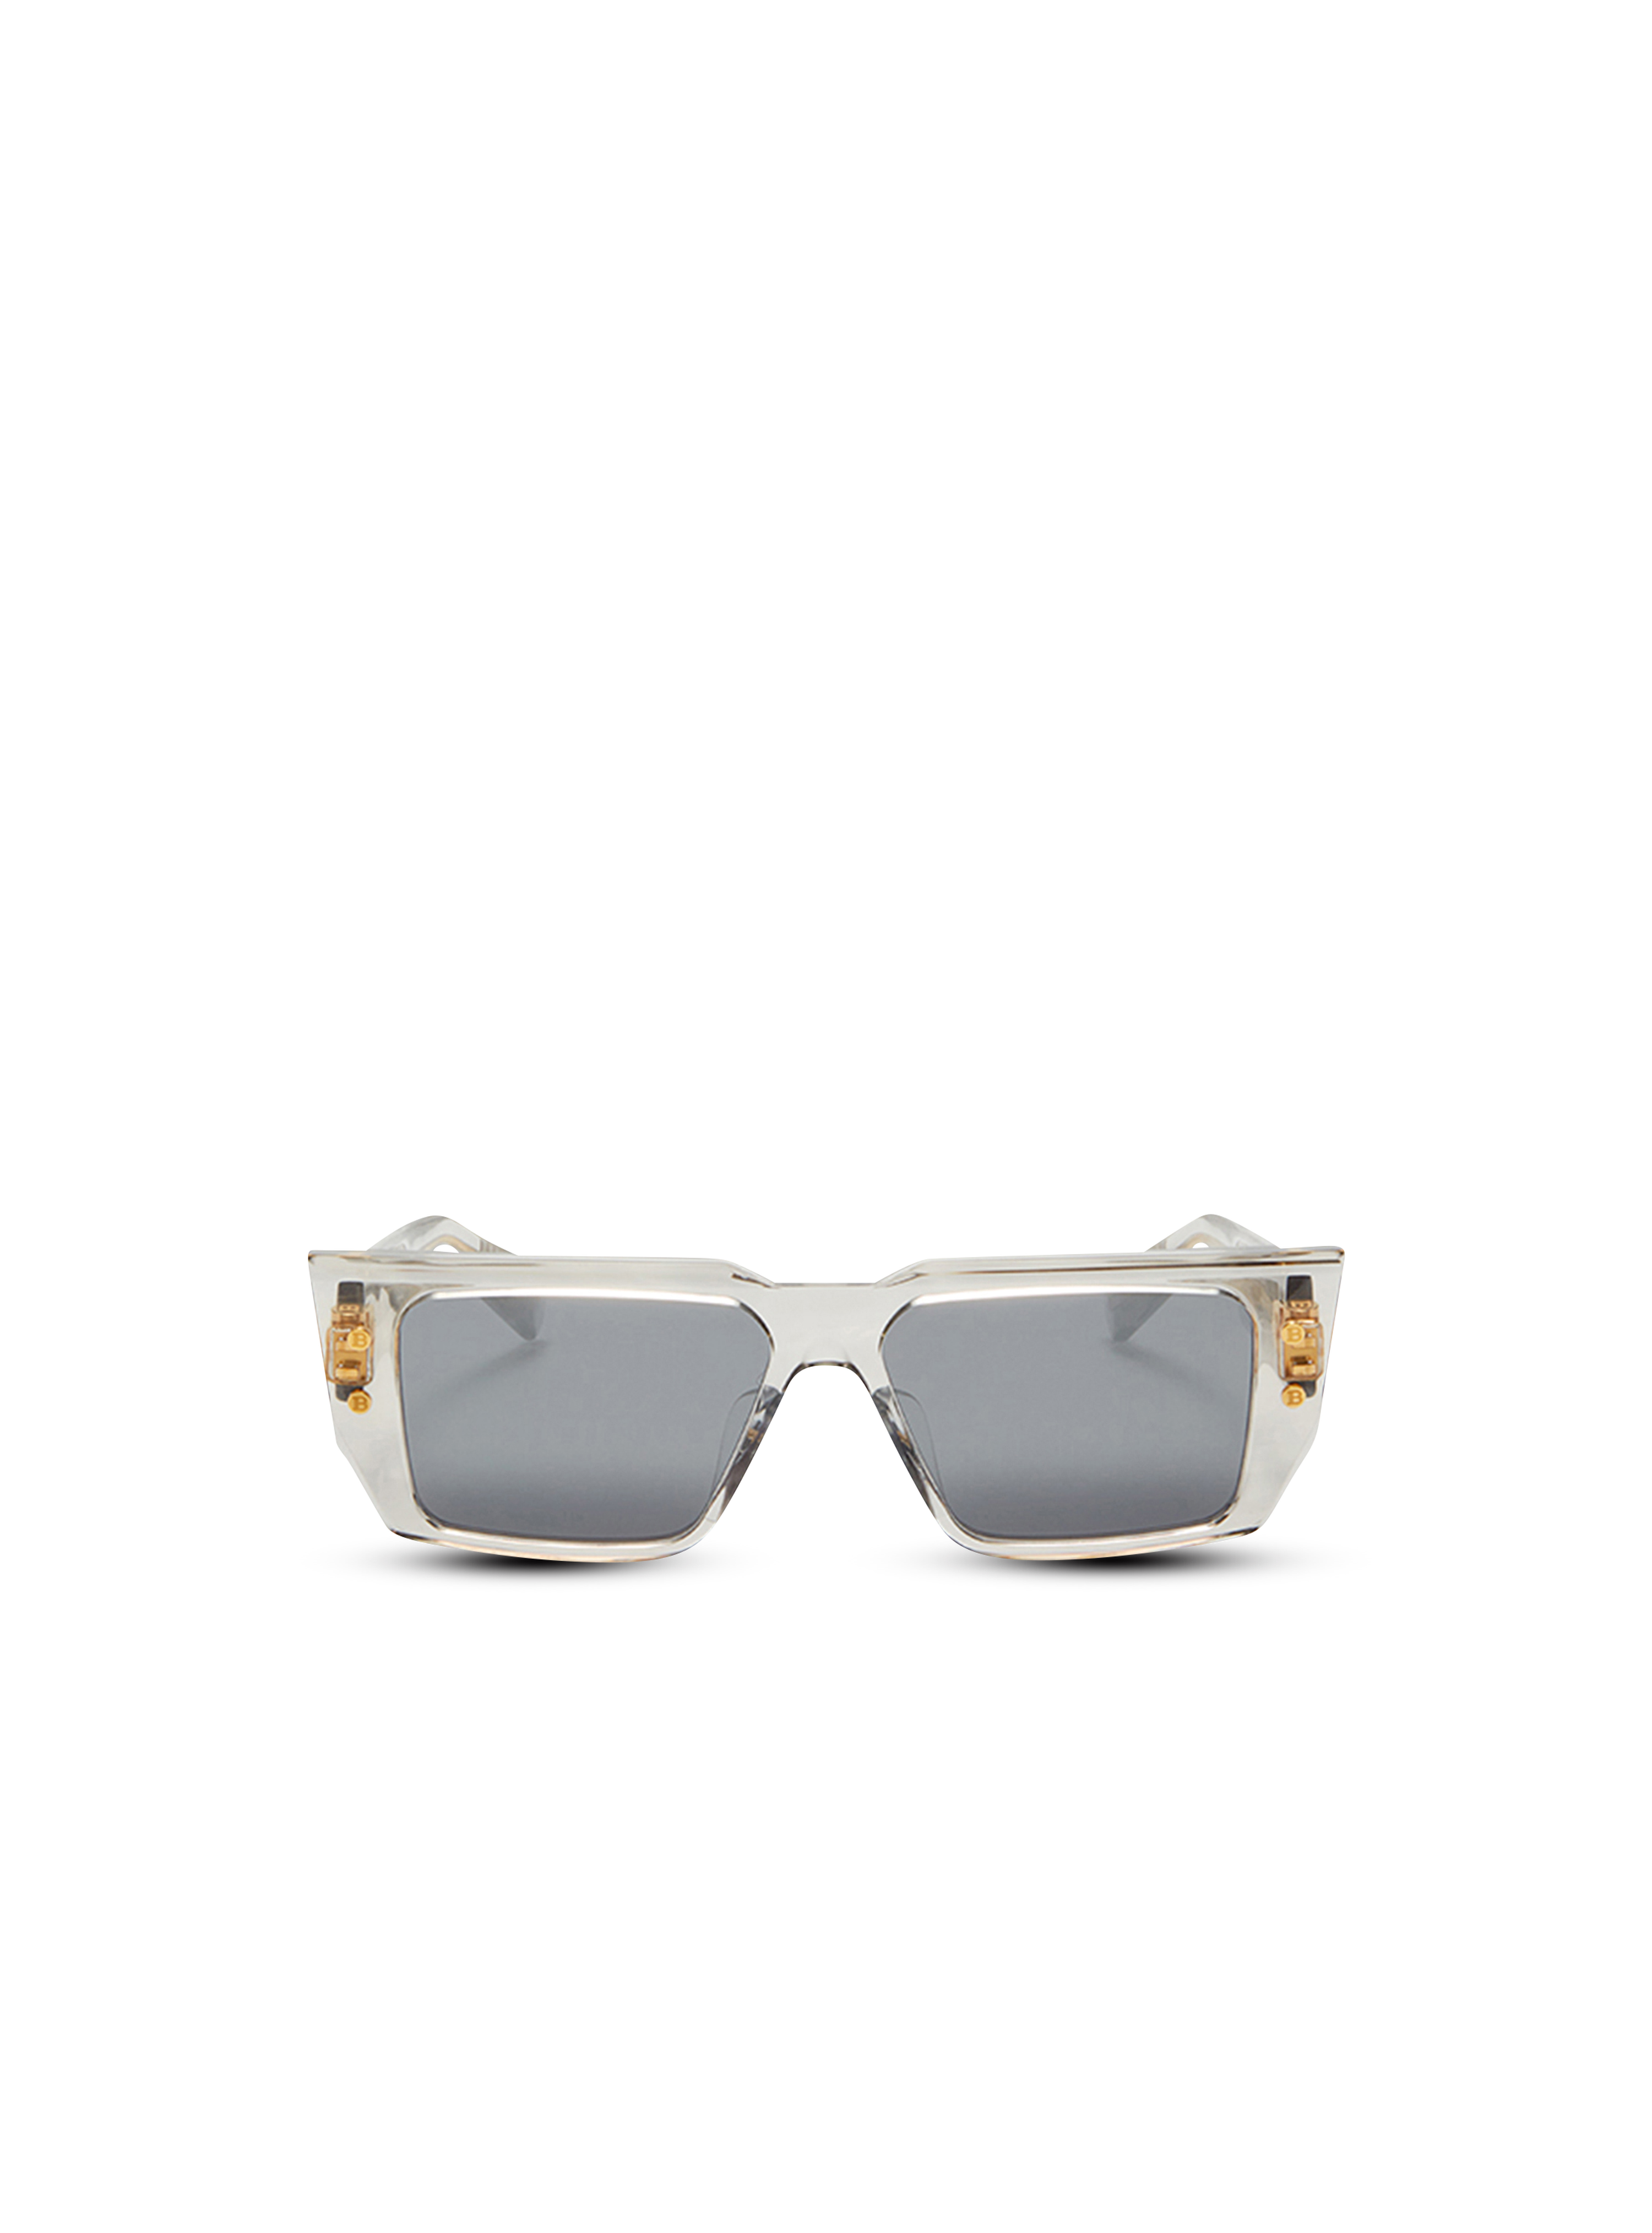 Sonnenbrille B-VI aus Acetat, grau